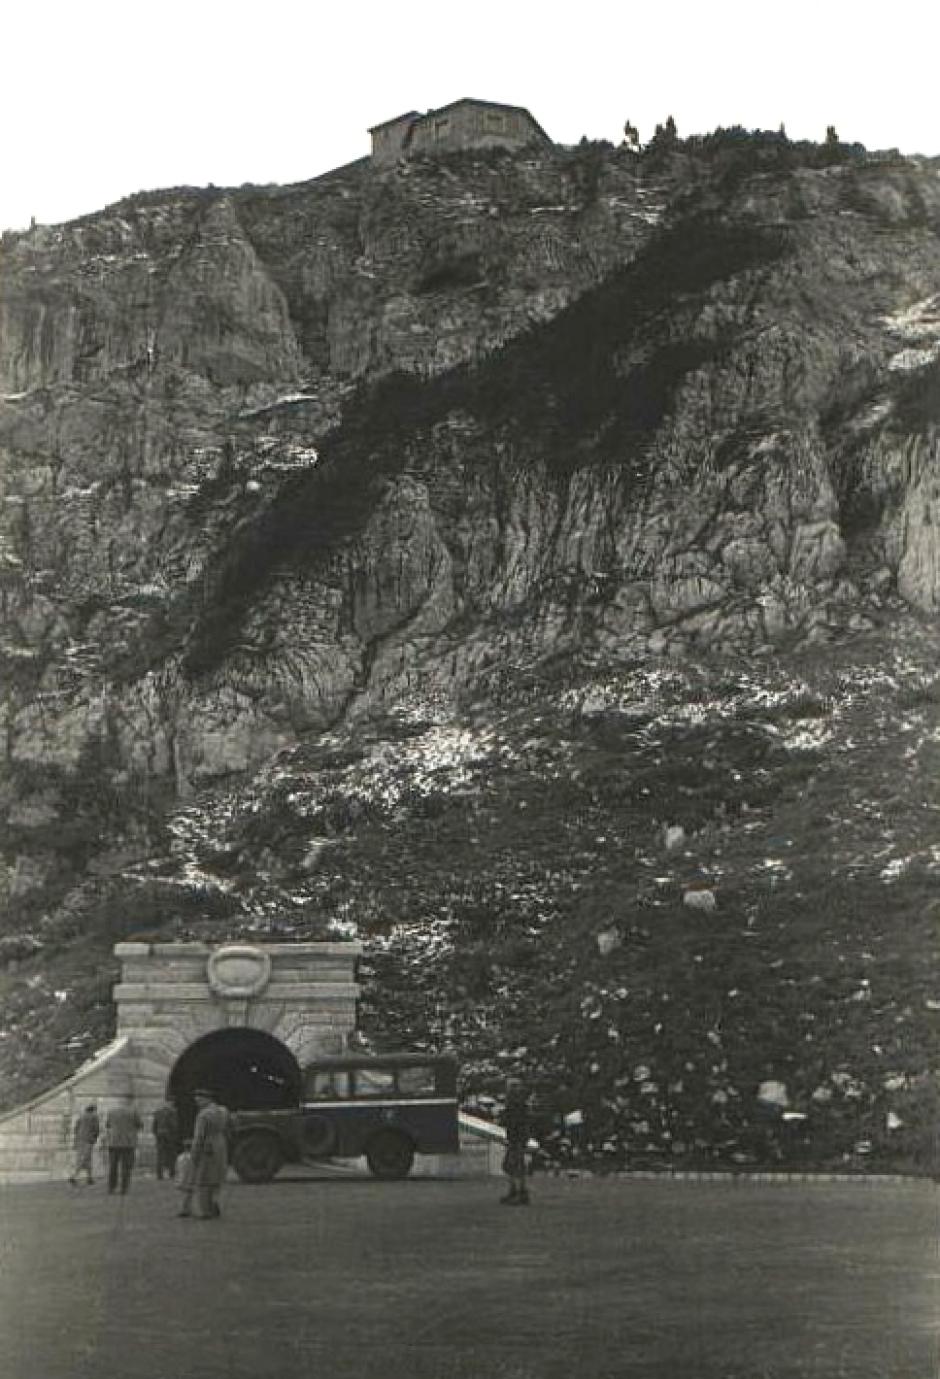 Fotografía de 1945 que muestra la entrada del túnel al elevador que sube a la Kehlsteinhaus, visible en la parte superior